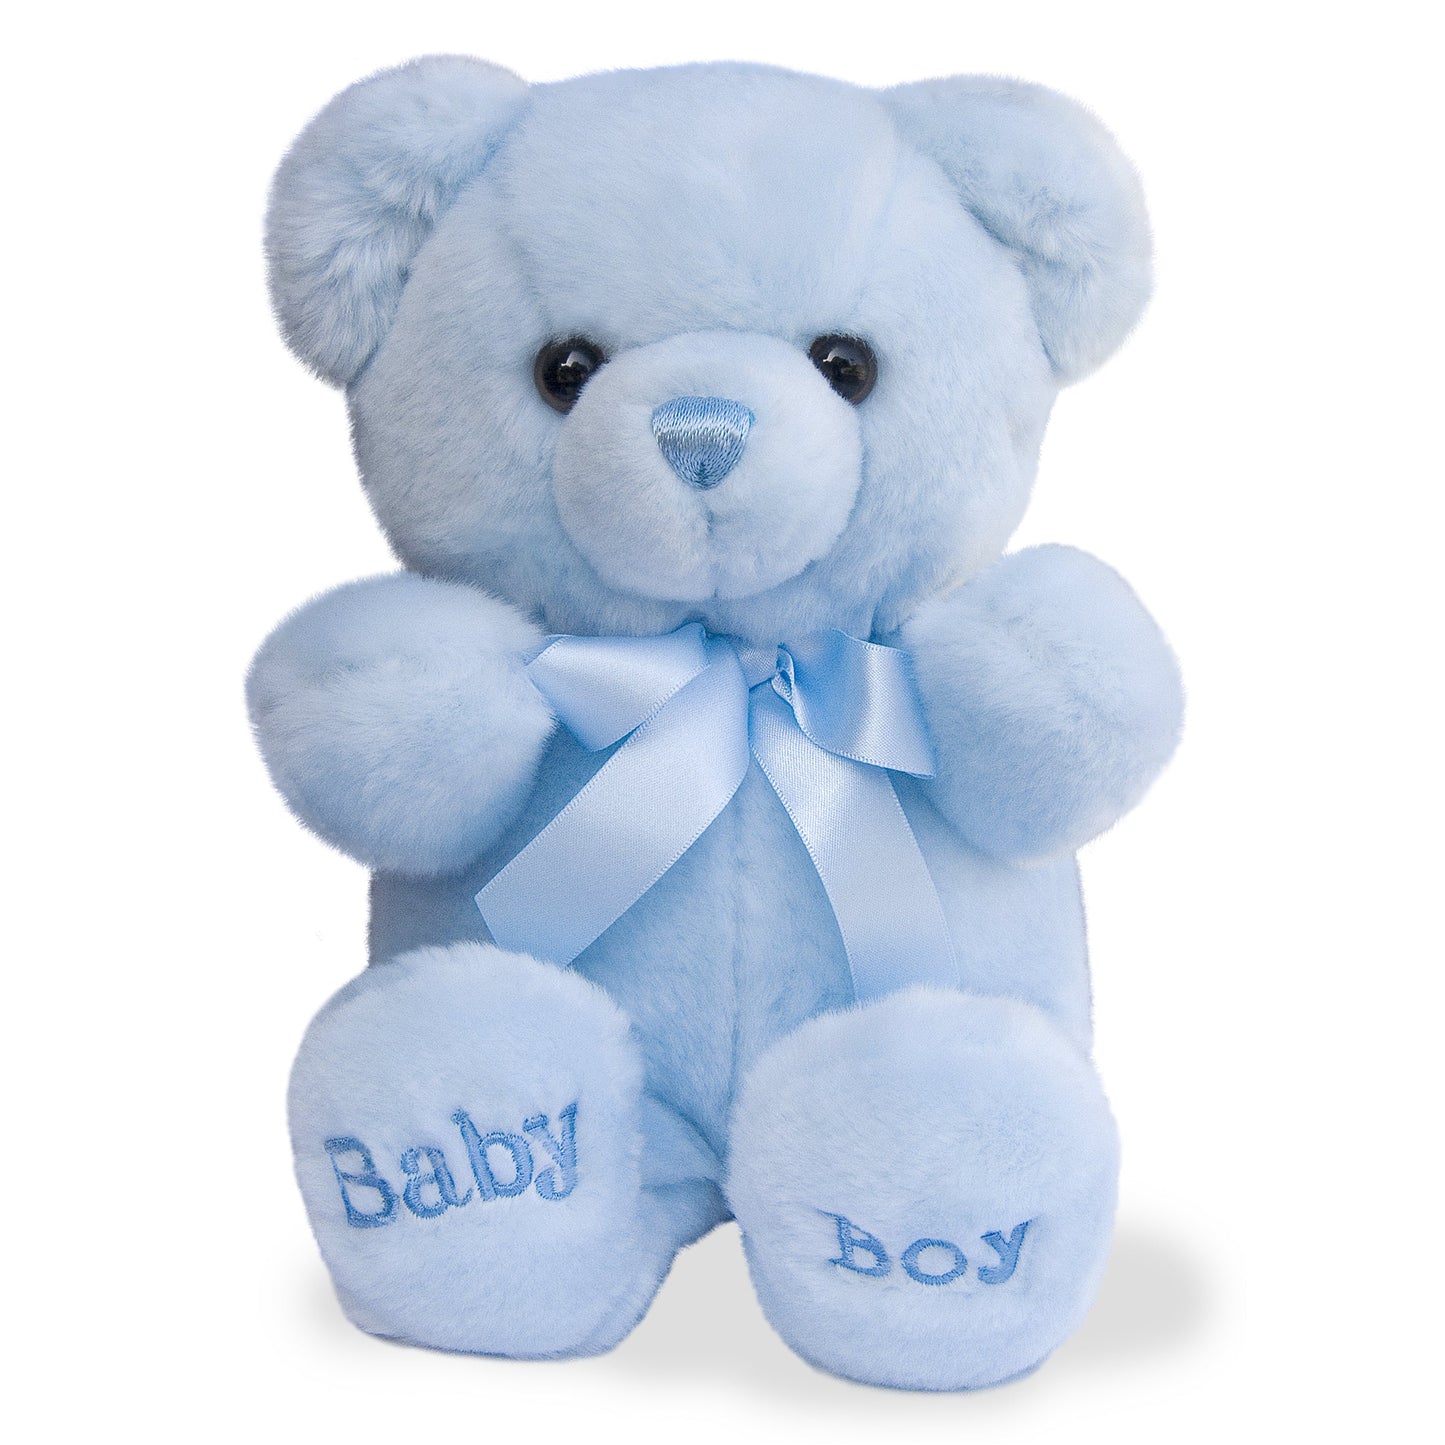 Comfy - 10" Bear Baby Boy-Blue